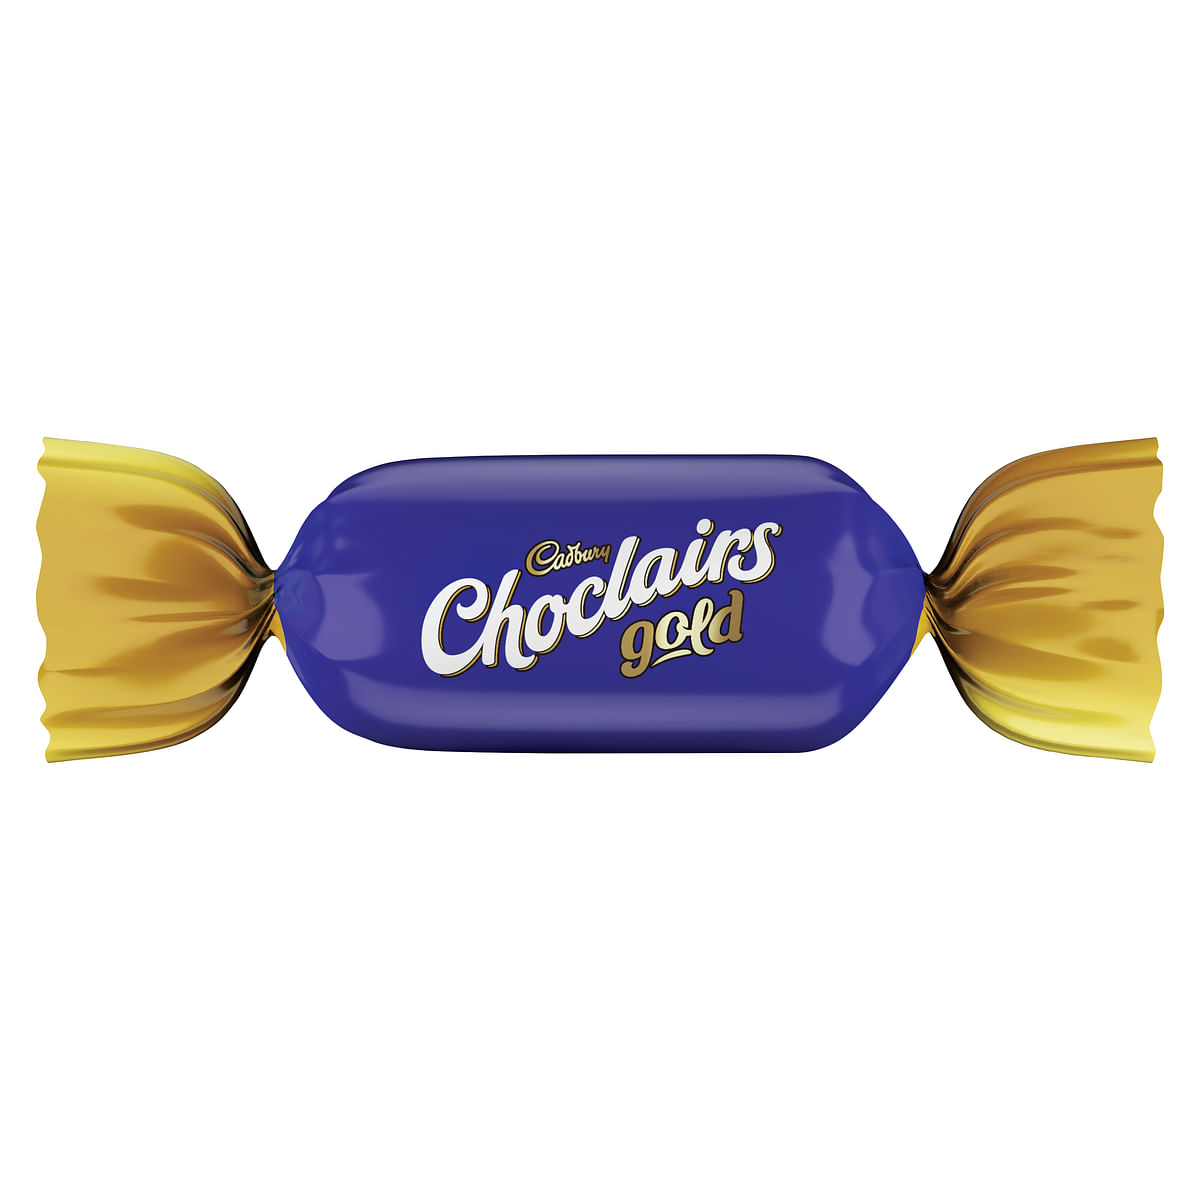 Cadbury Chocclairs new packaging